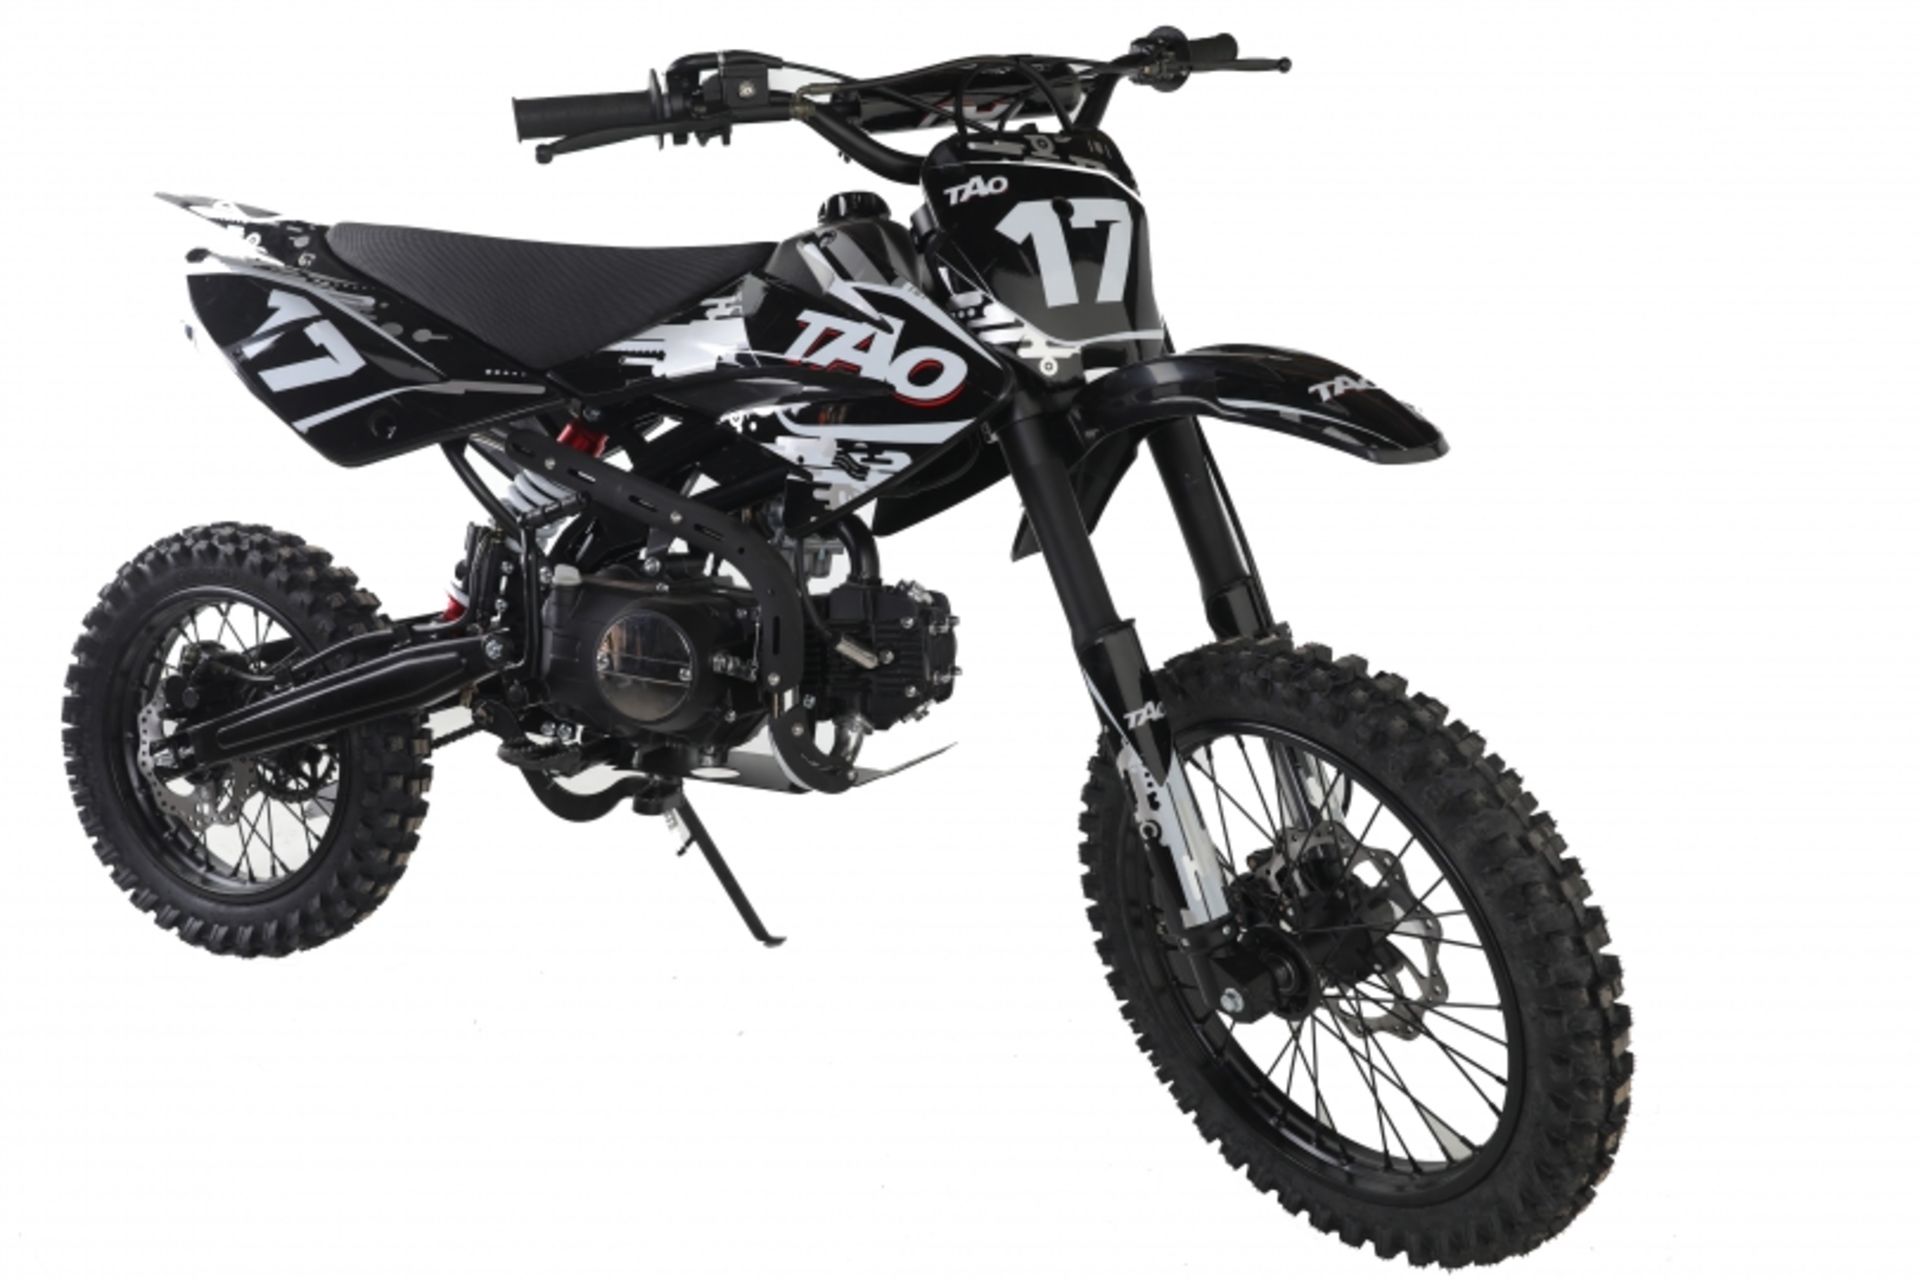 V Brand New 125cc USA Motocross Dirt Bike - Kick Start - Air Cooled - 4 Stroke - Full Suspension -